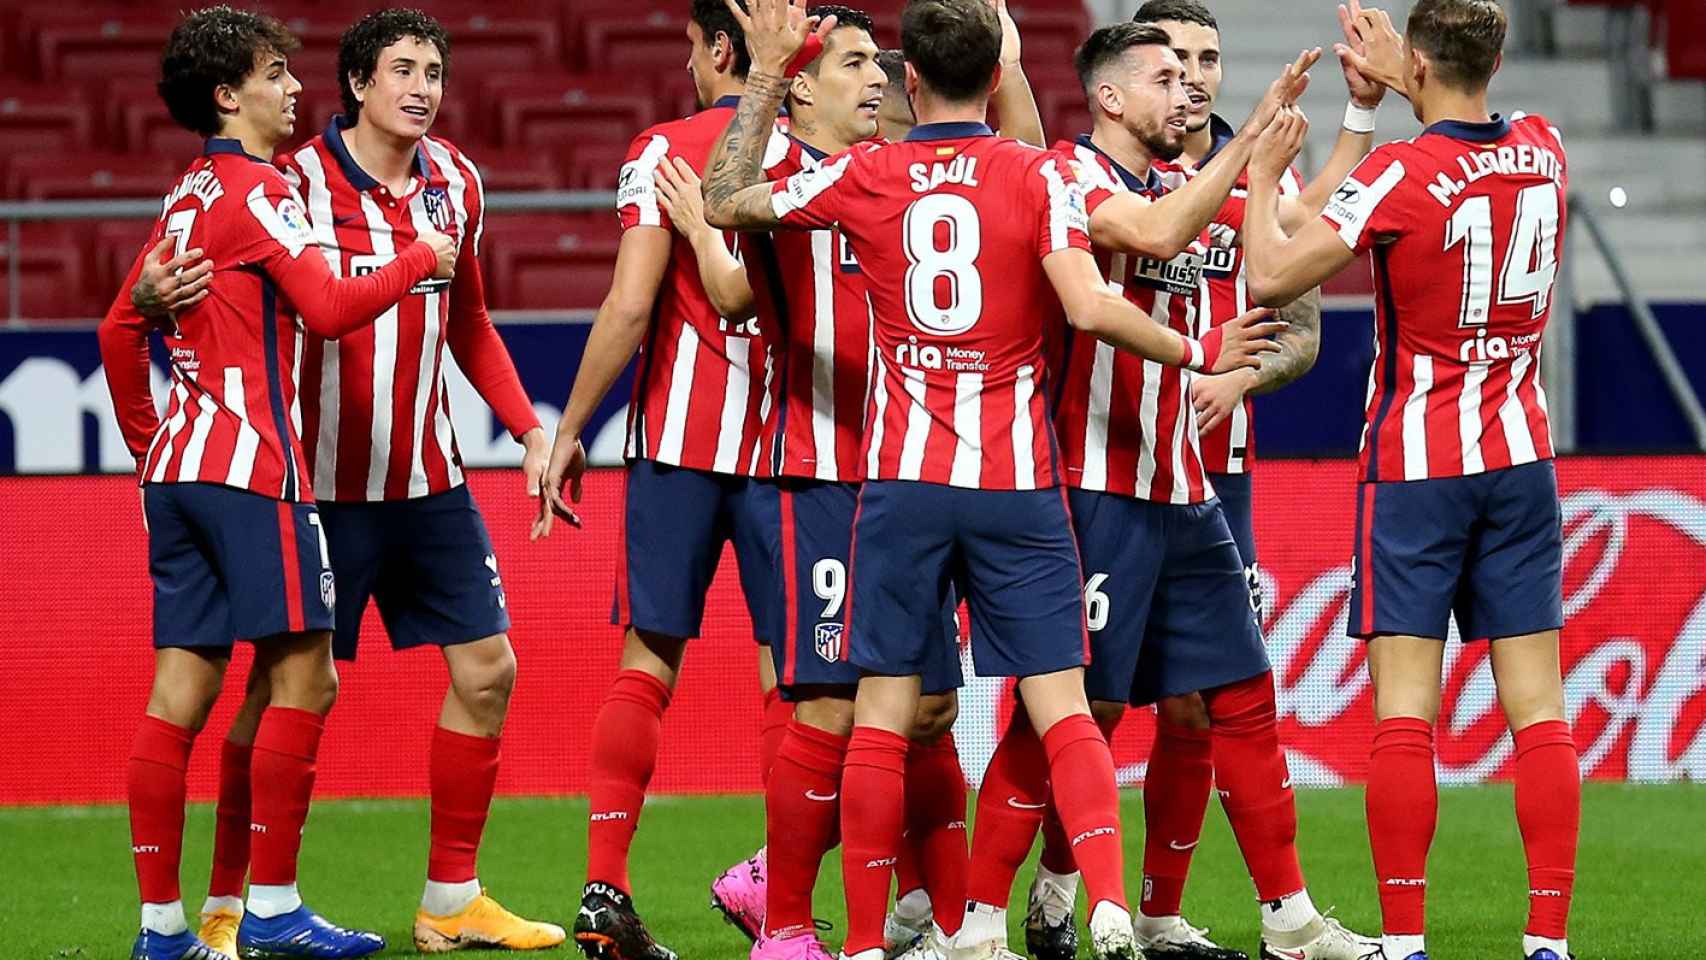 Los jugadores del Atlético de Madrid celebrando un gol / Atlético de Madrid